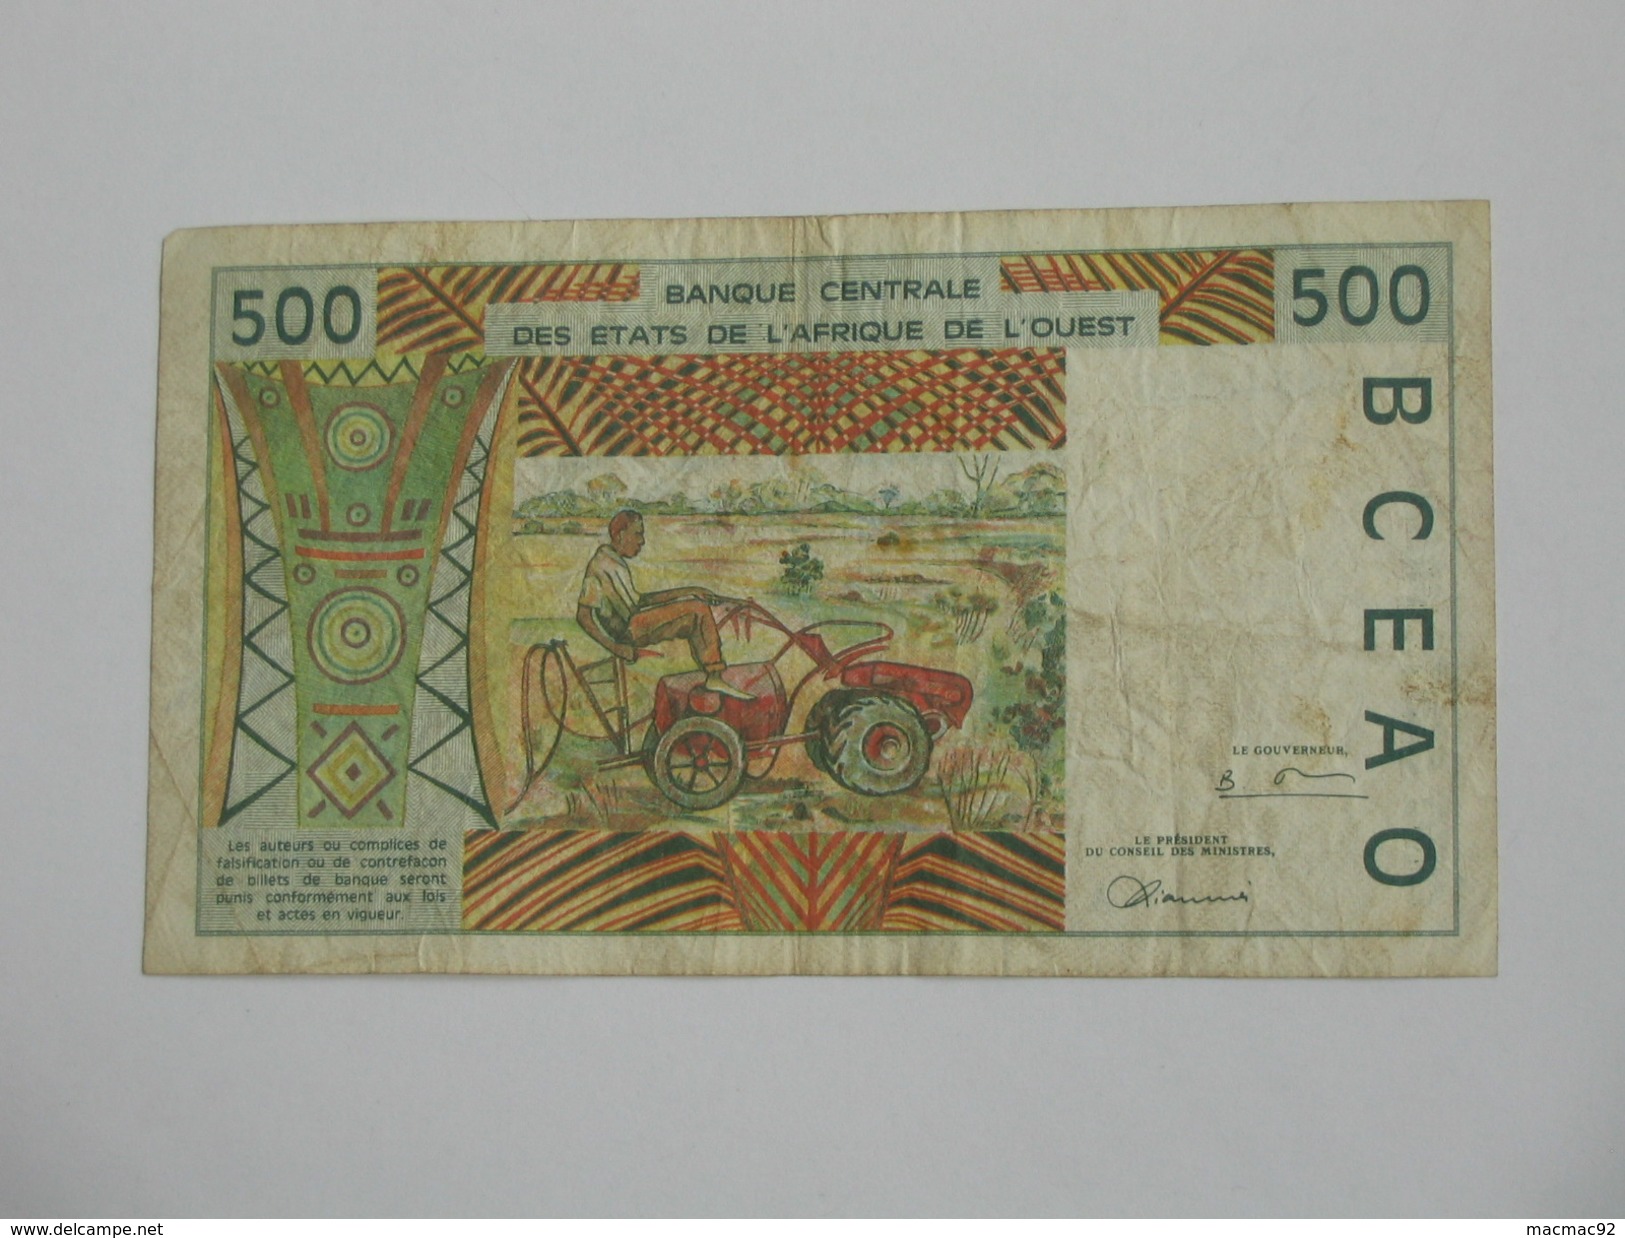 500 Cinq Cents Francs 1986- 1996 -  Banque Central Des états De L'Afrique De L'ouest  **** EN ACHAT IMMEDIAT **** - Costa De Marfil